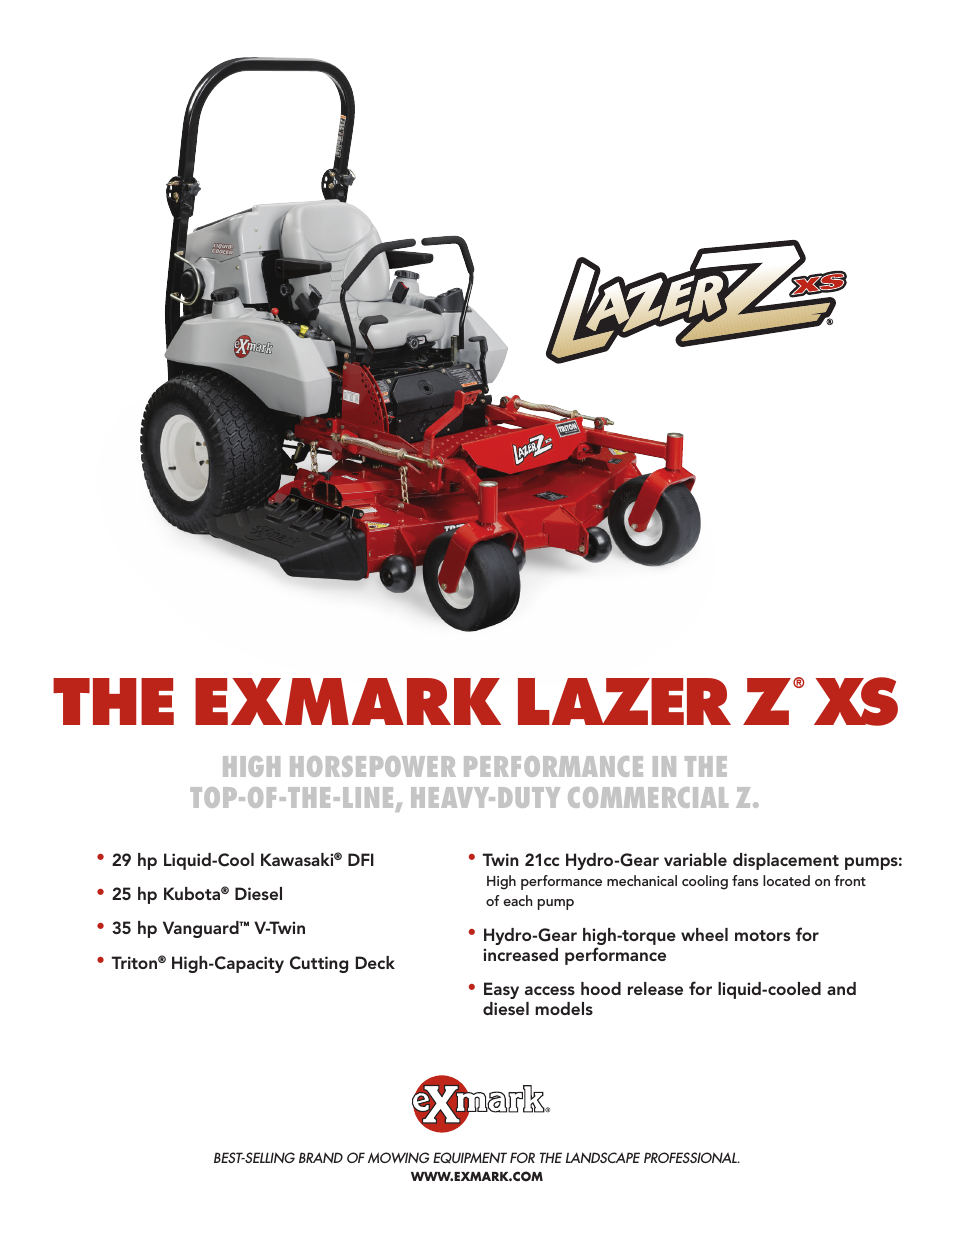 Lazer Z XS lXs35bv725